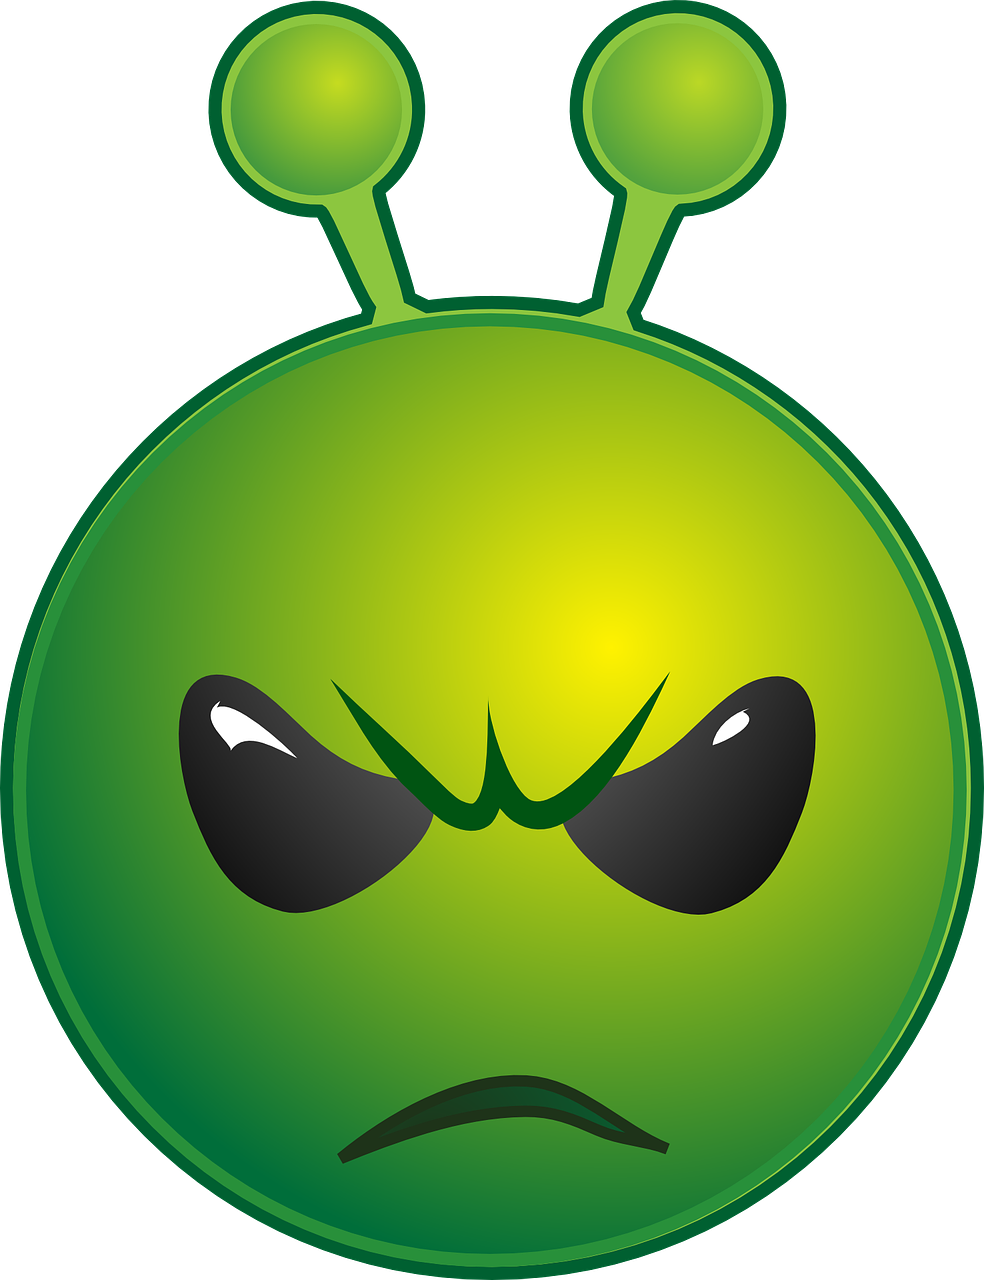 alien unhappy emoticon free photo